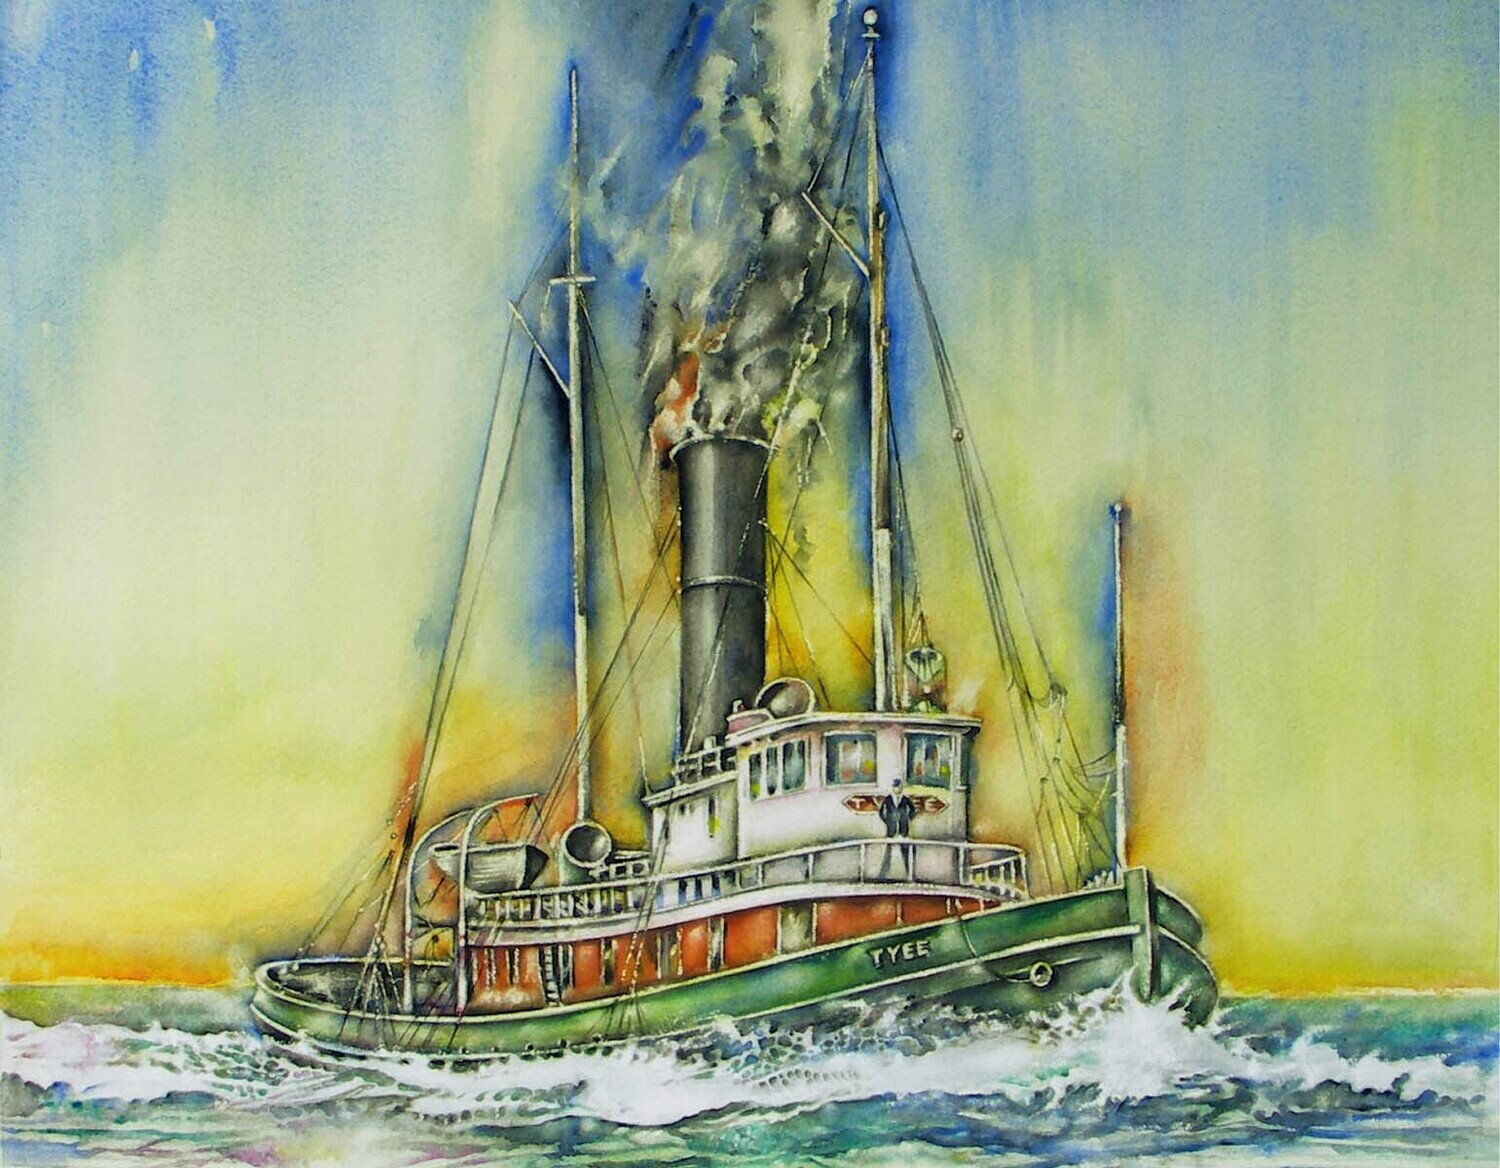 Art Giclee Prints | "Tugboat Tyee"